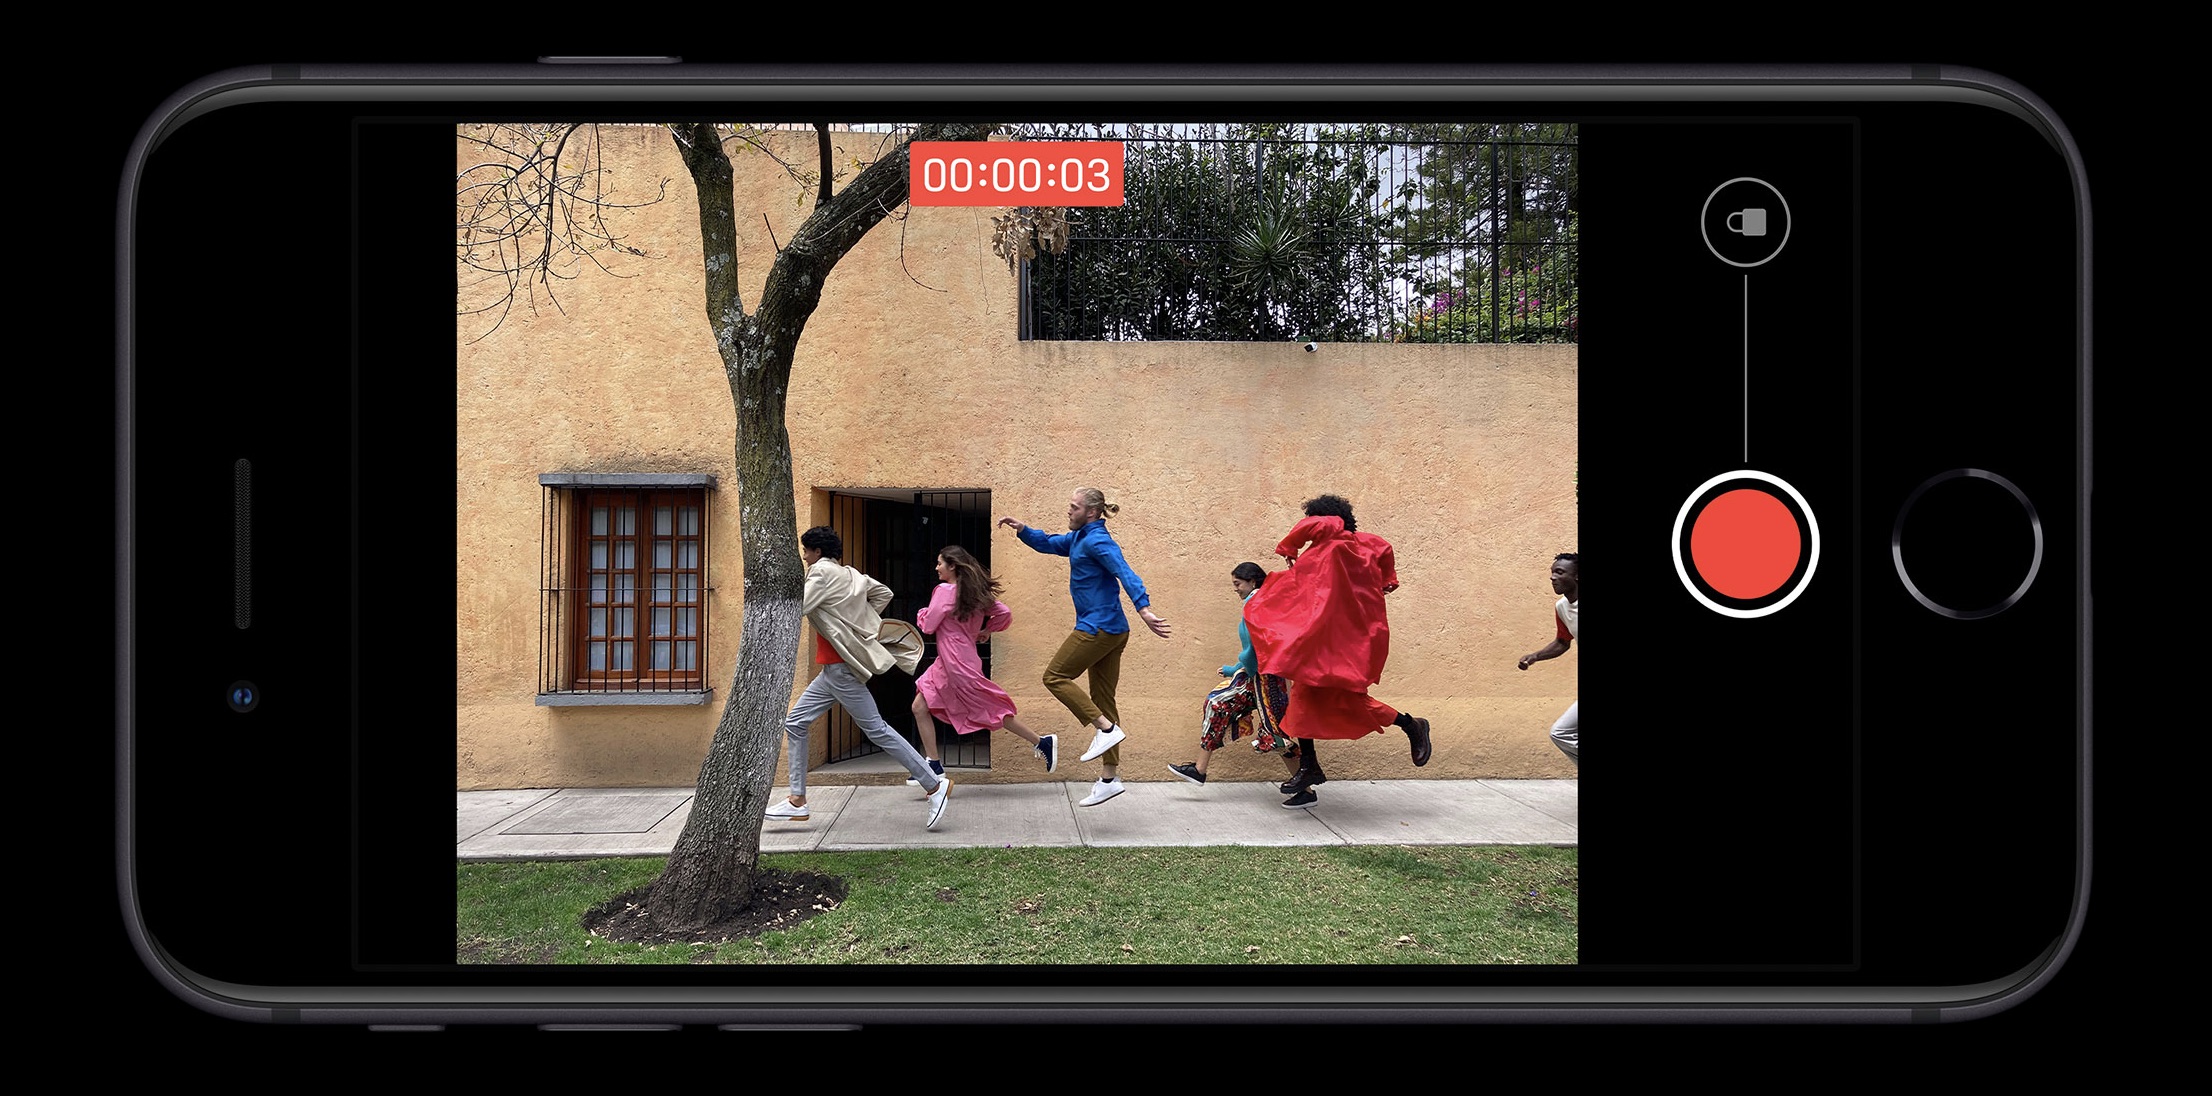 Modo 'QuickTake', presente no iPhone SE, permite gravar vídeos rápidos sem sair da área de fotografias